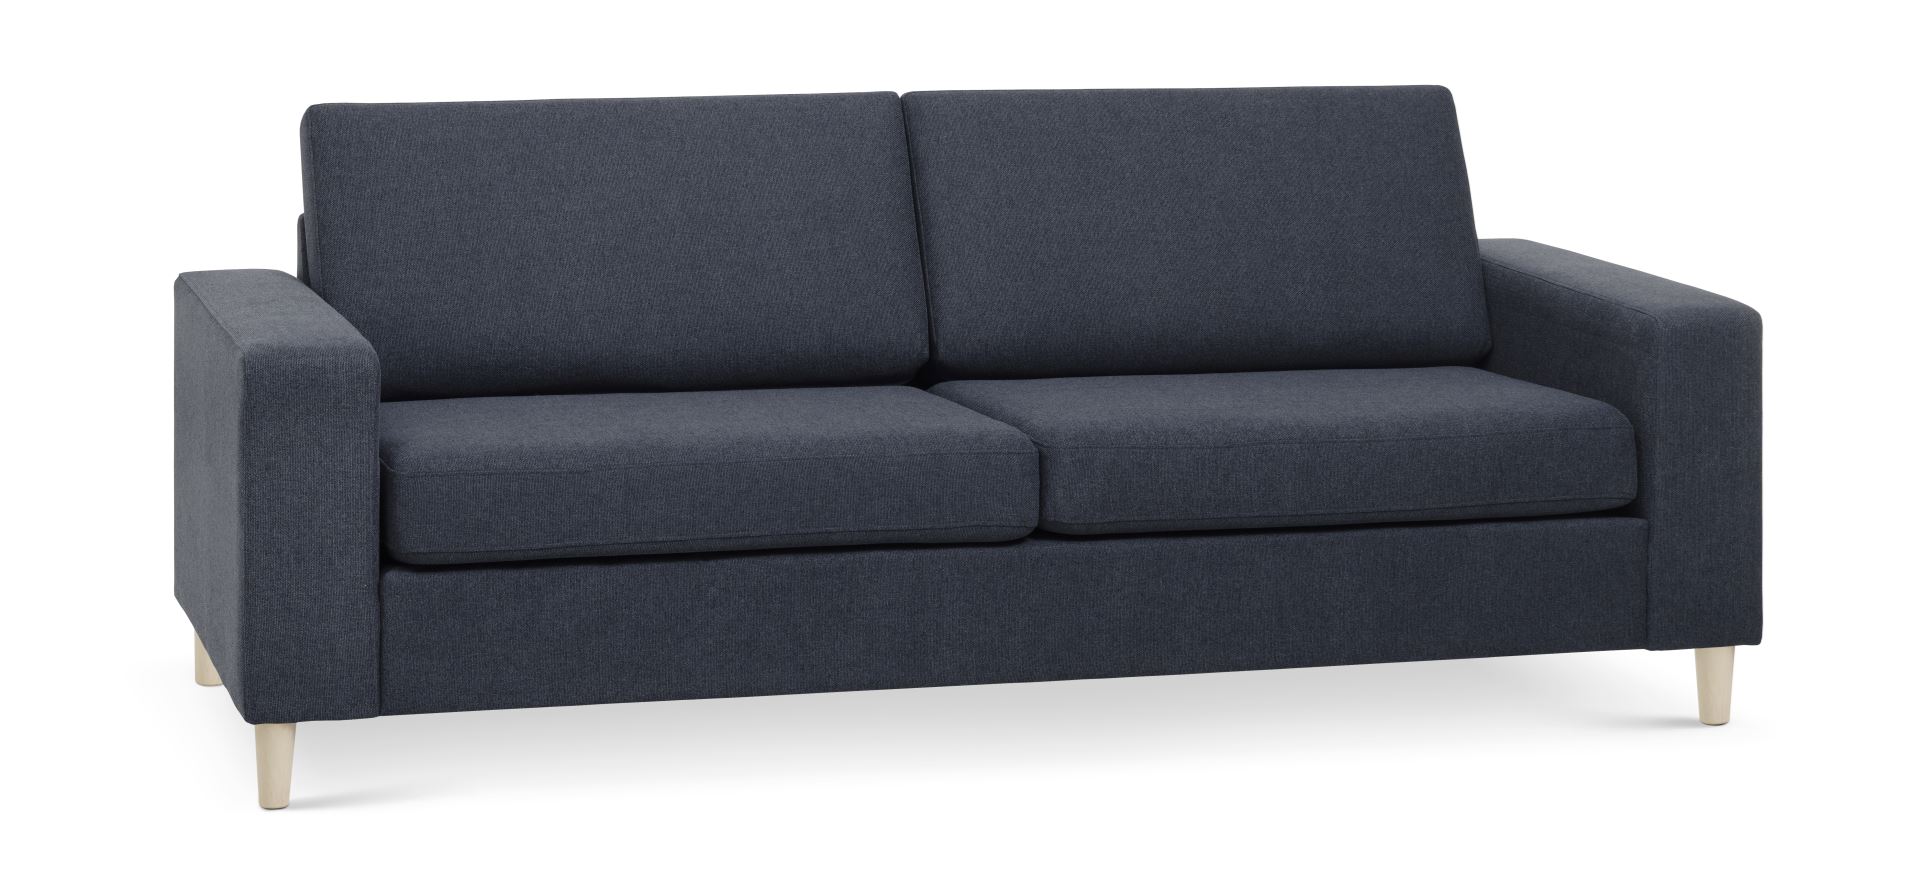 Billede af Pan 2,5 pers. sofa - blå polyester stof og natur træ